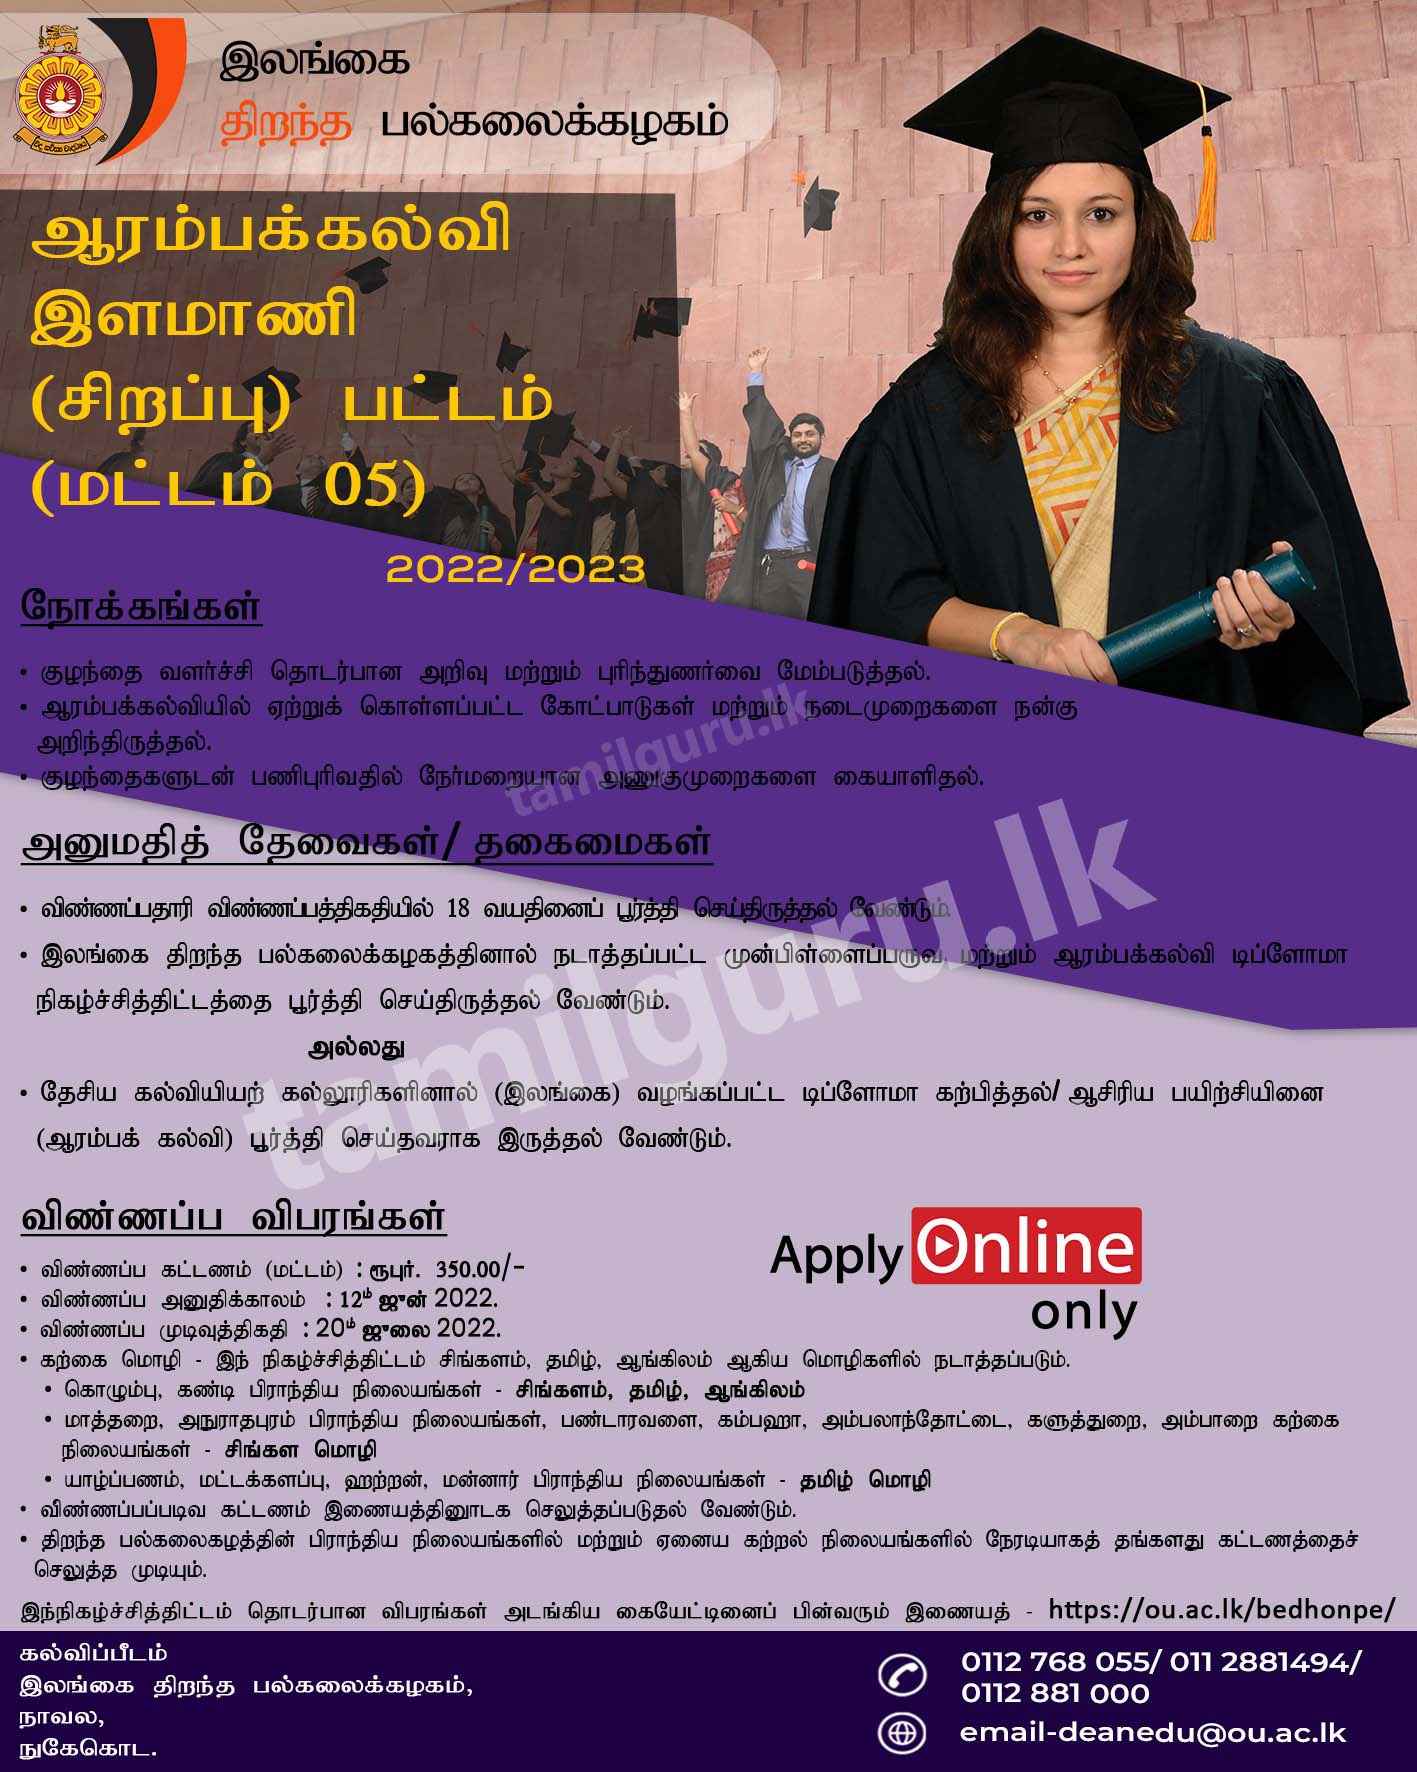 B.Ed in Primary Education Degree (Level 05) 2022 - Open University of Sri Lanka / ஆரம்பக் கல்வி தொடர்பிலான கல்விமாணி (சிறப்பு) பட்ட கற்கைநெறி - இலங்கை திறந்த பல்கலைக்கழகம்